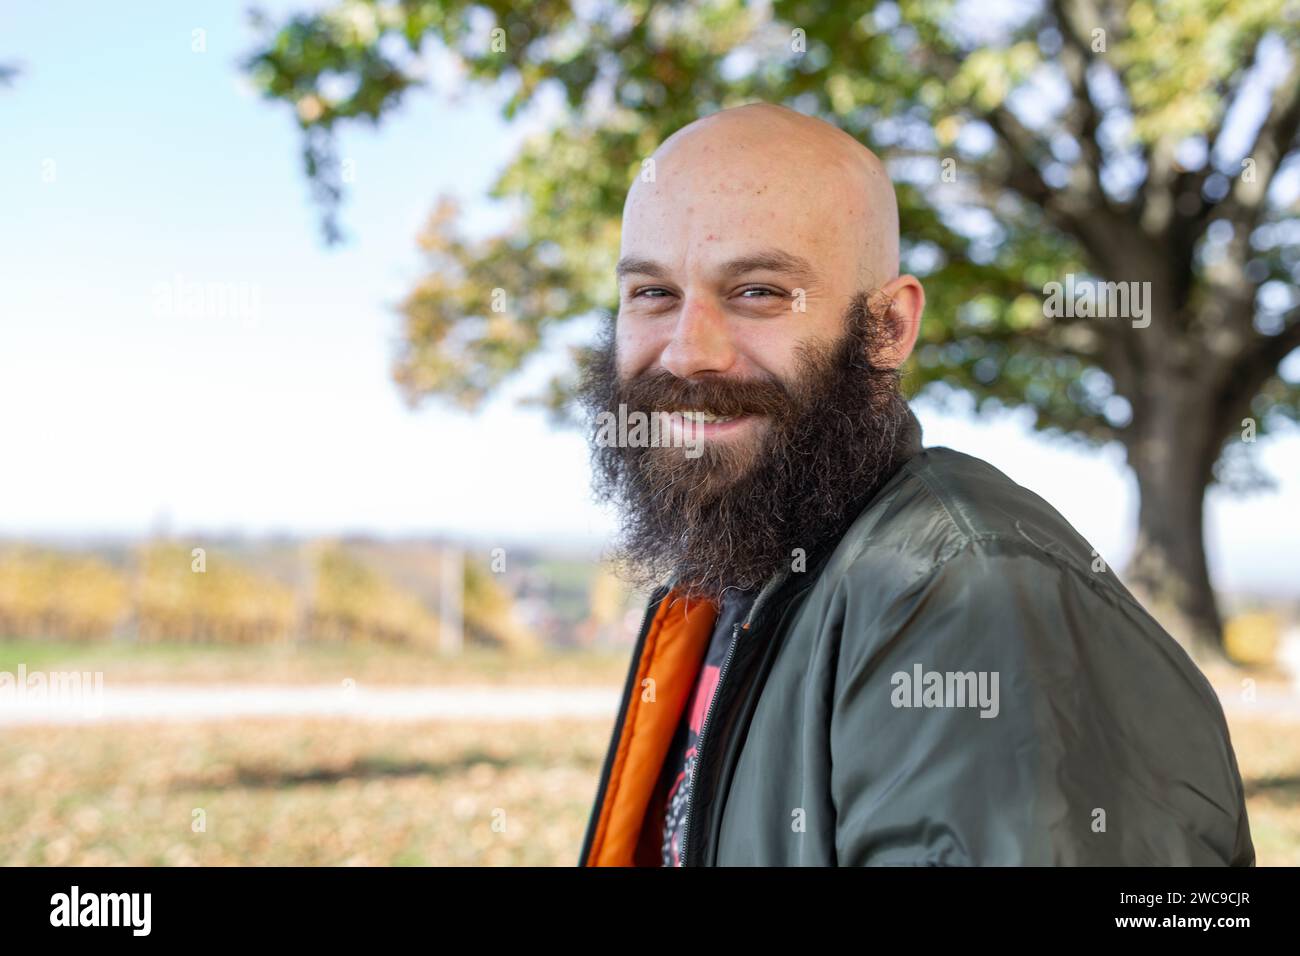 Un homme avec une longue barbe abîmée souriant par temps ensoleillé. Il est en plein air, chauve et porte un blouson d'aviateur Banque D'Images